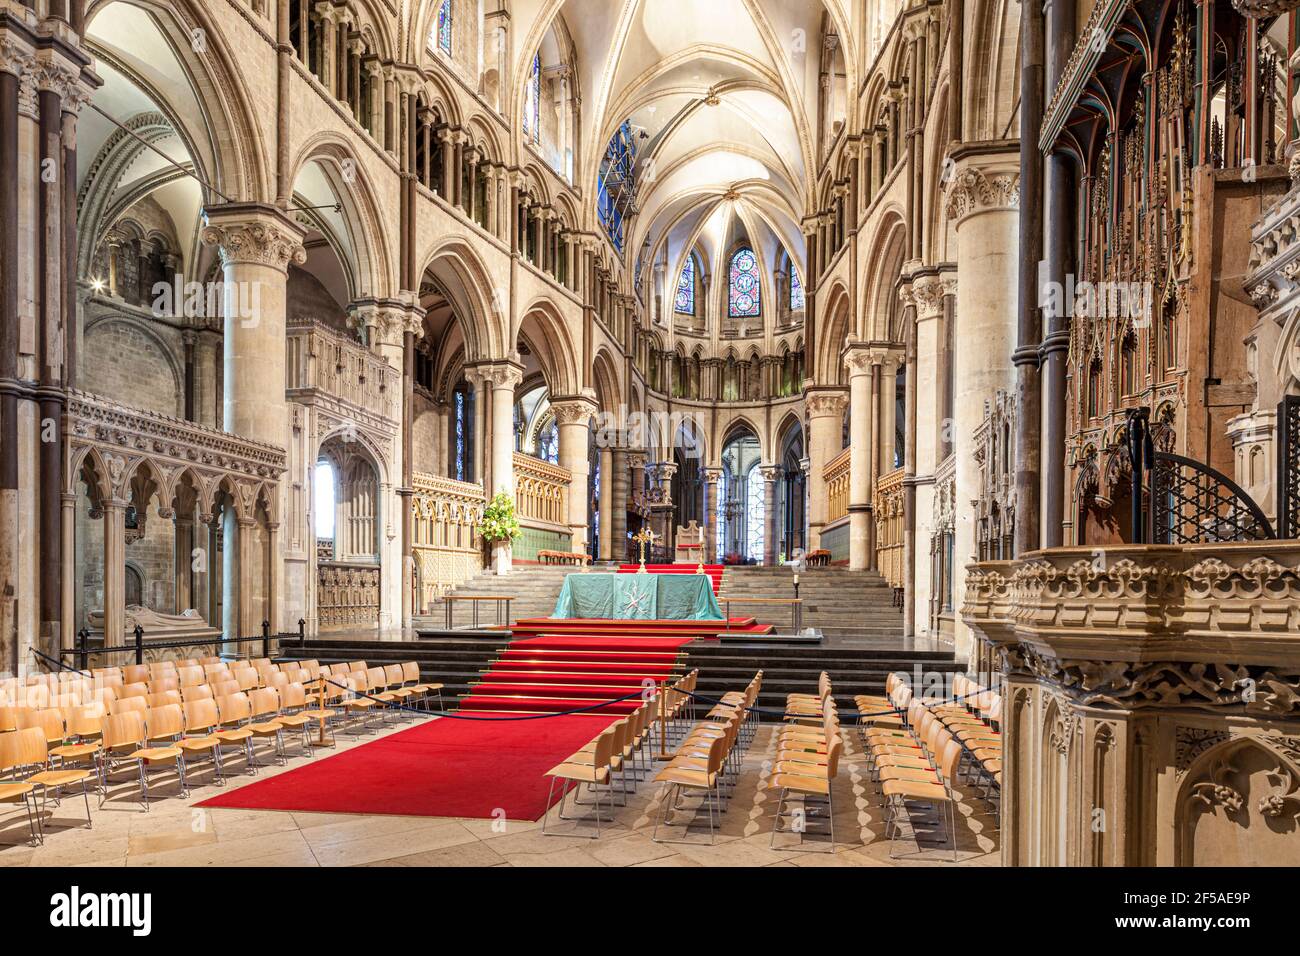 Le haut autel de la cathédrale de Canterbury, Kent, Royaume-Uni Banque D'Images